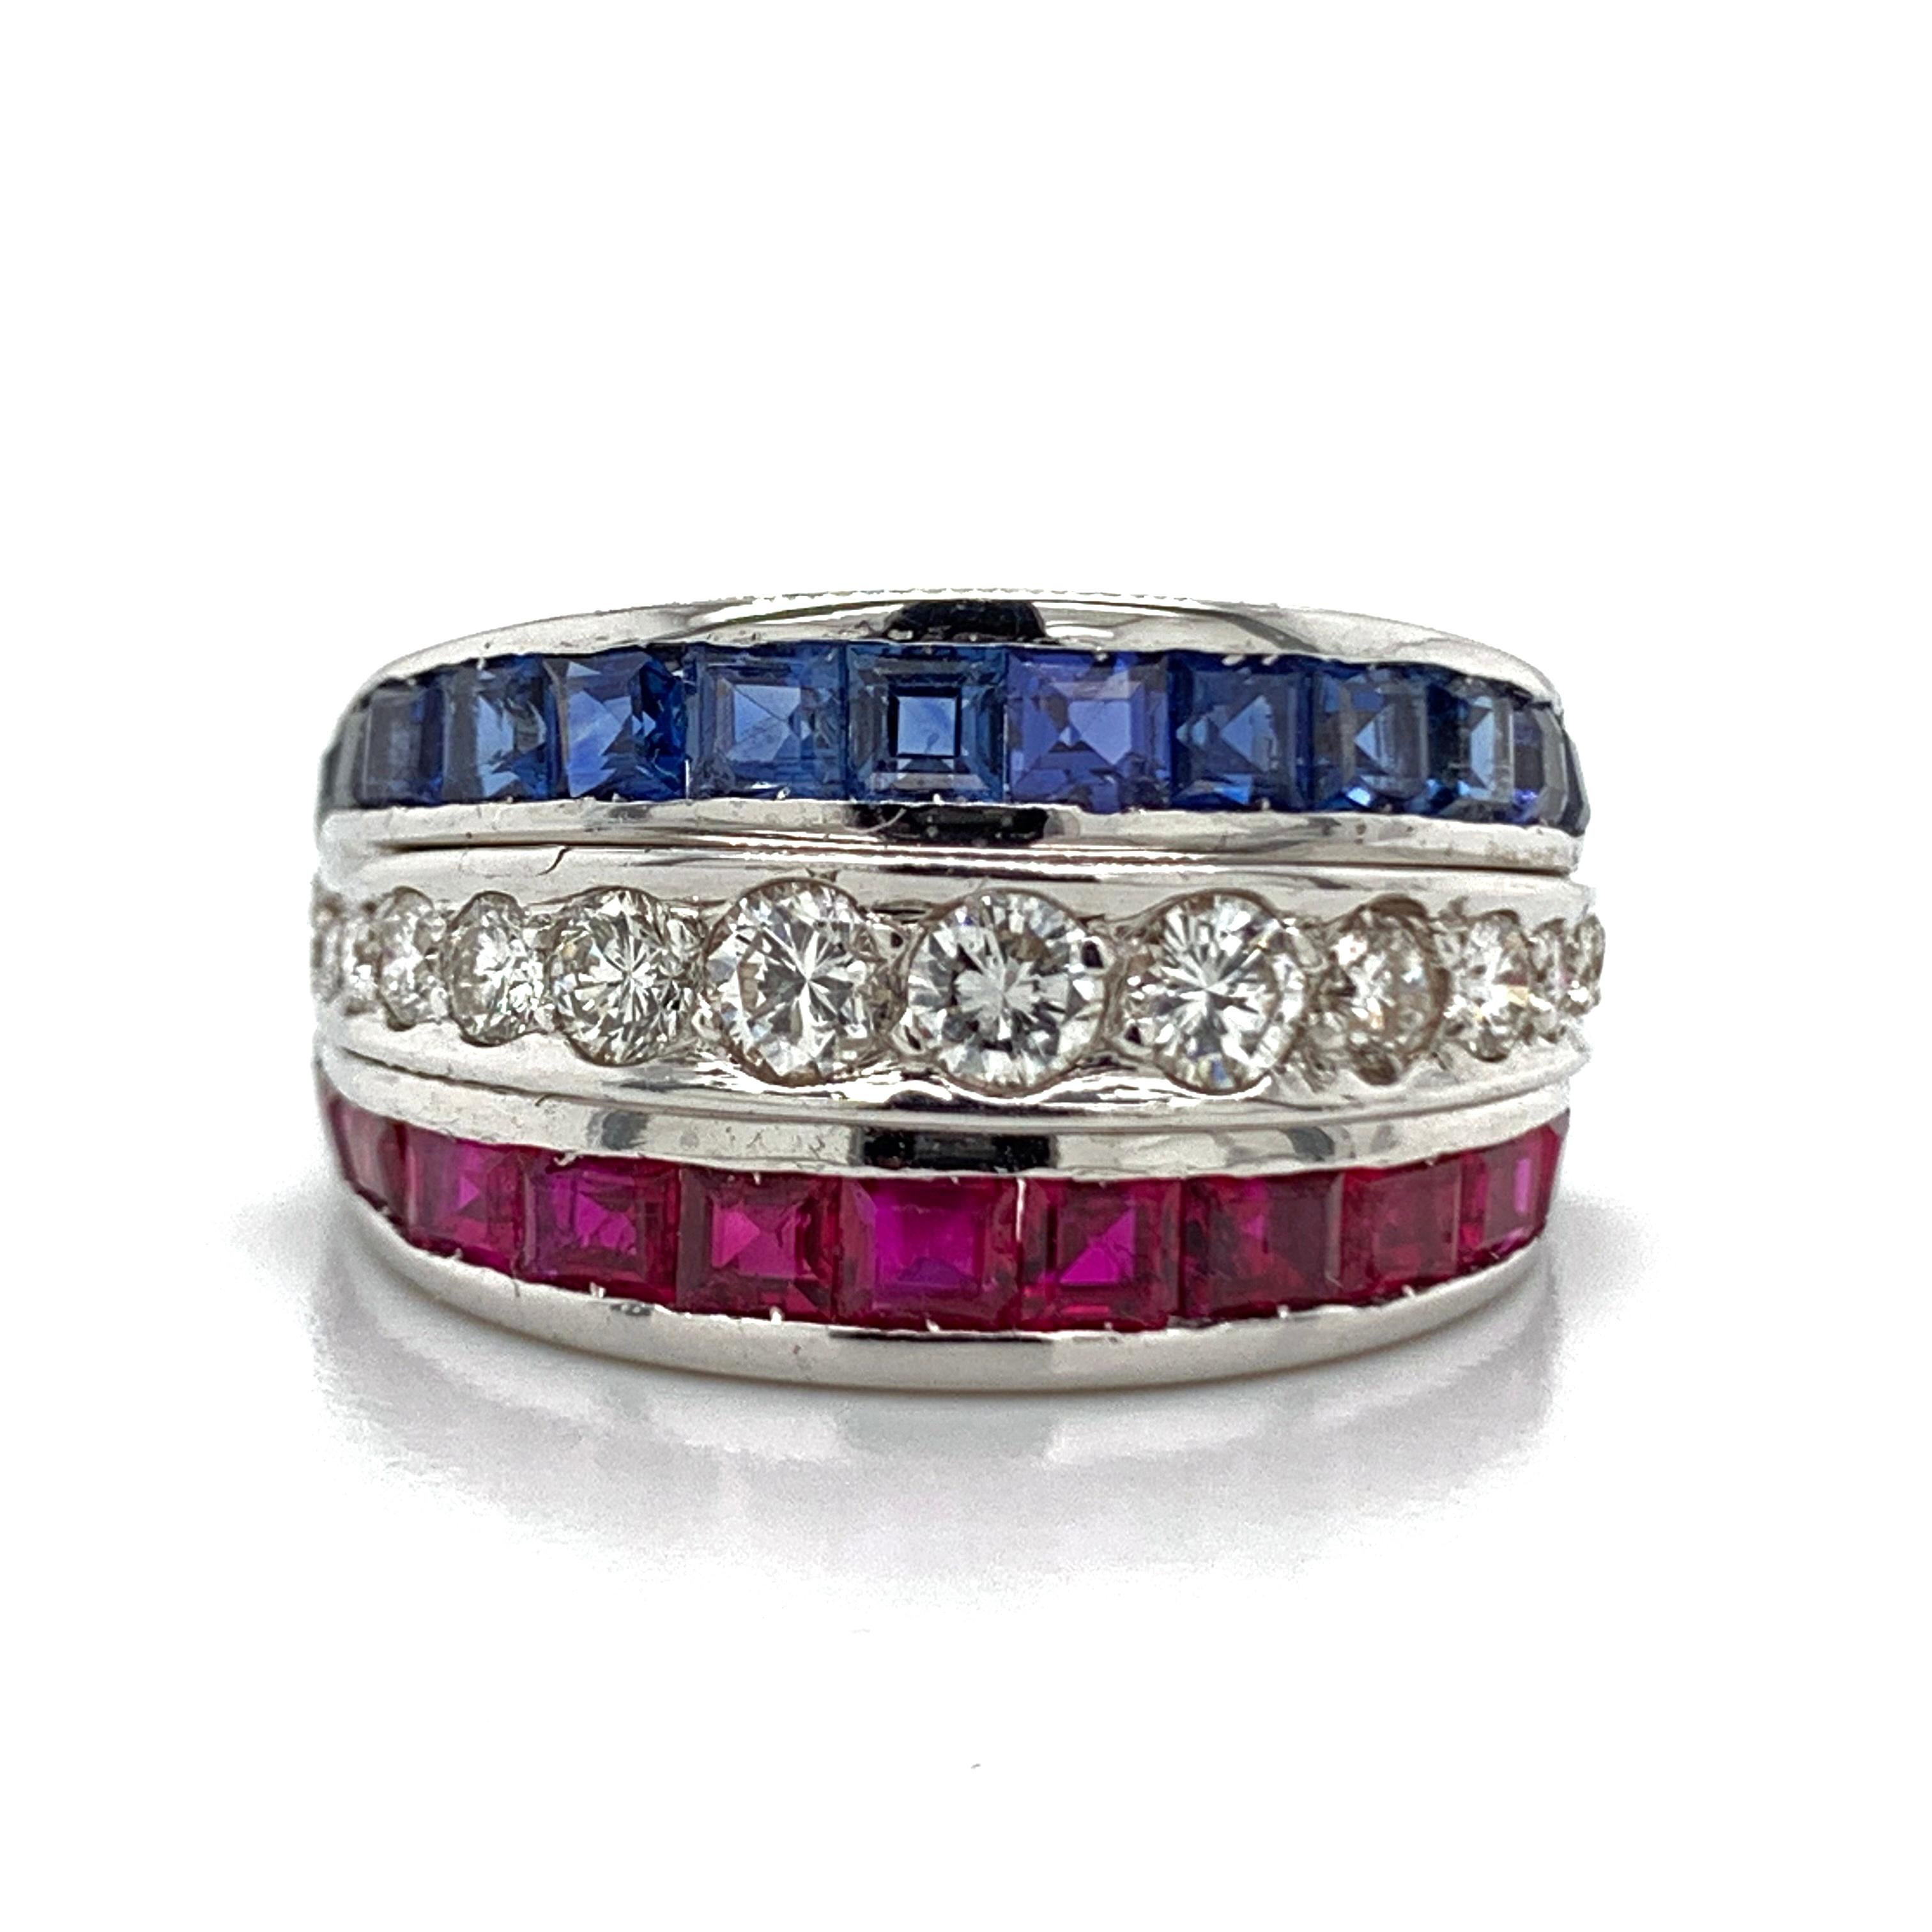 A, schöne 18kt Weißgold Diamant & Saphir, und Rubin Ring. Dieser reizende Ring besteht aus schönen runden Diamanten in der mittleren Reihe, während die Rubine und Saphire ihn vervollständigen. Der Ring ist aus schönem, poliertem Weißgold gefertigt.